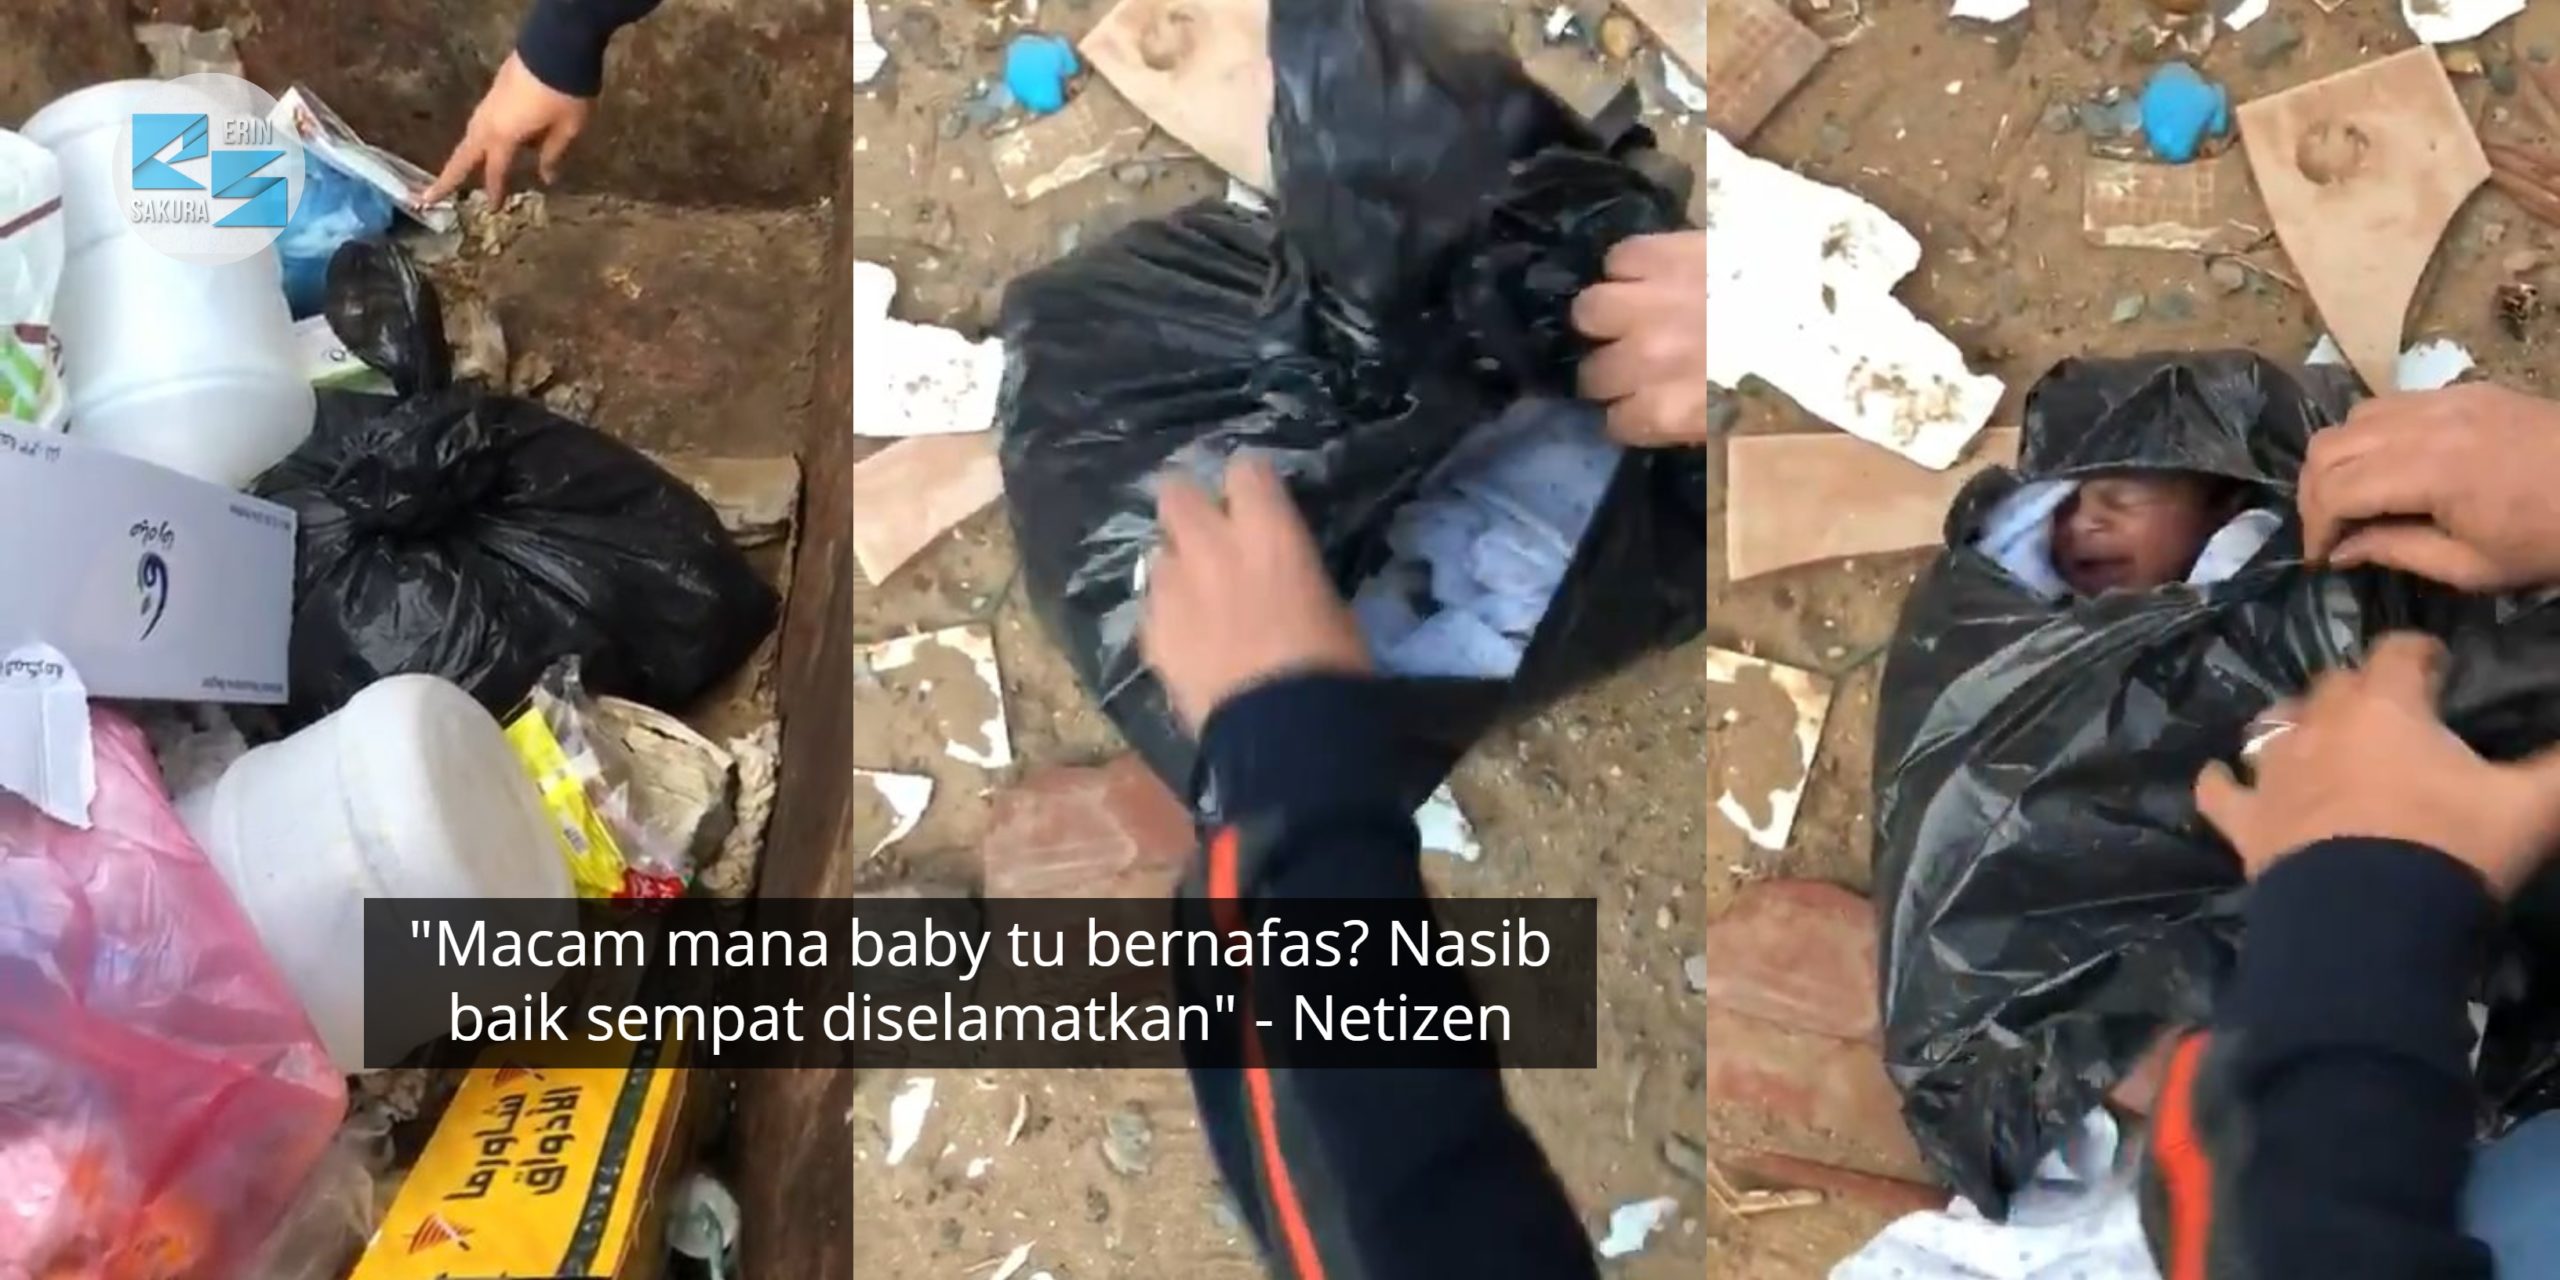 [VIDEO] Kuasa Allah, Bayi Terbuang Masih Hidup Walaupun Plastik Diikat Ketat